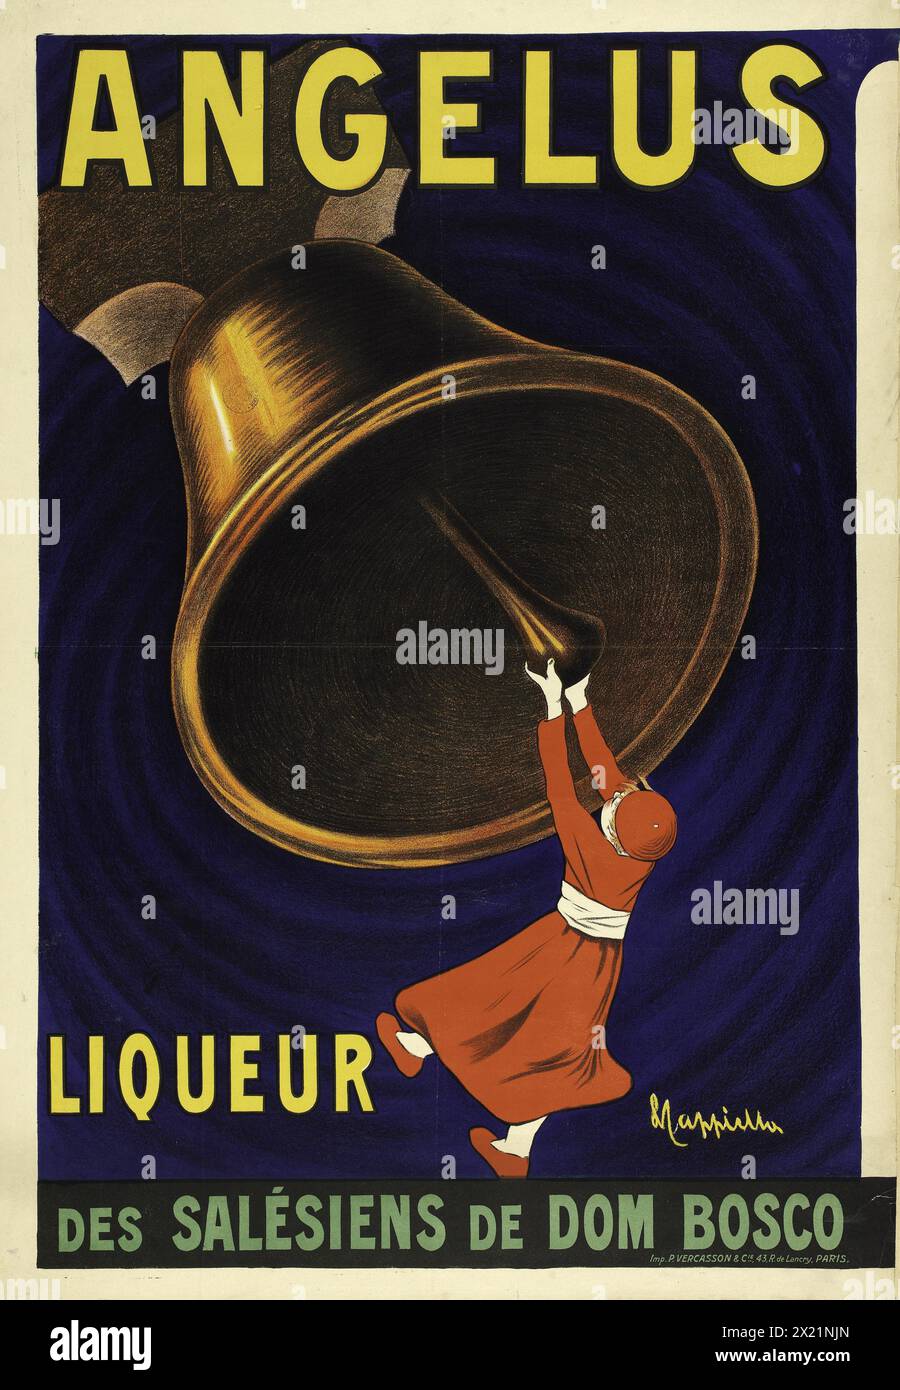 Angelus, liquore dei Salesiani di Dom Bosco - poster vintage Leonetto Cappiello, 1911 - pubblicità alcolica vintage. Foto Stock